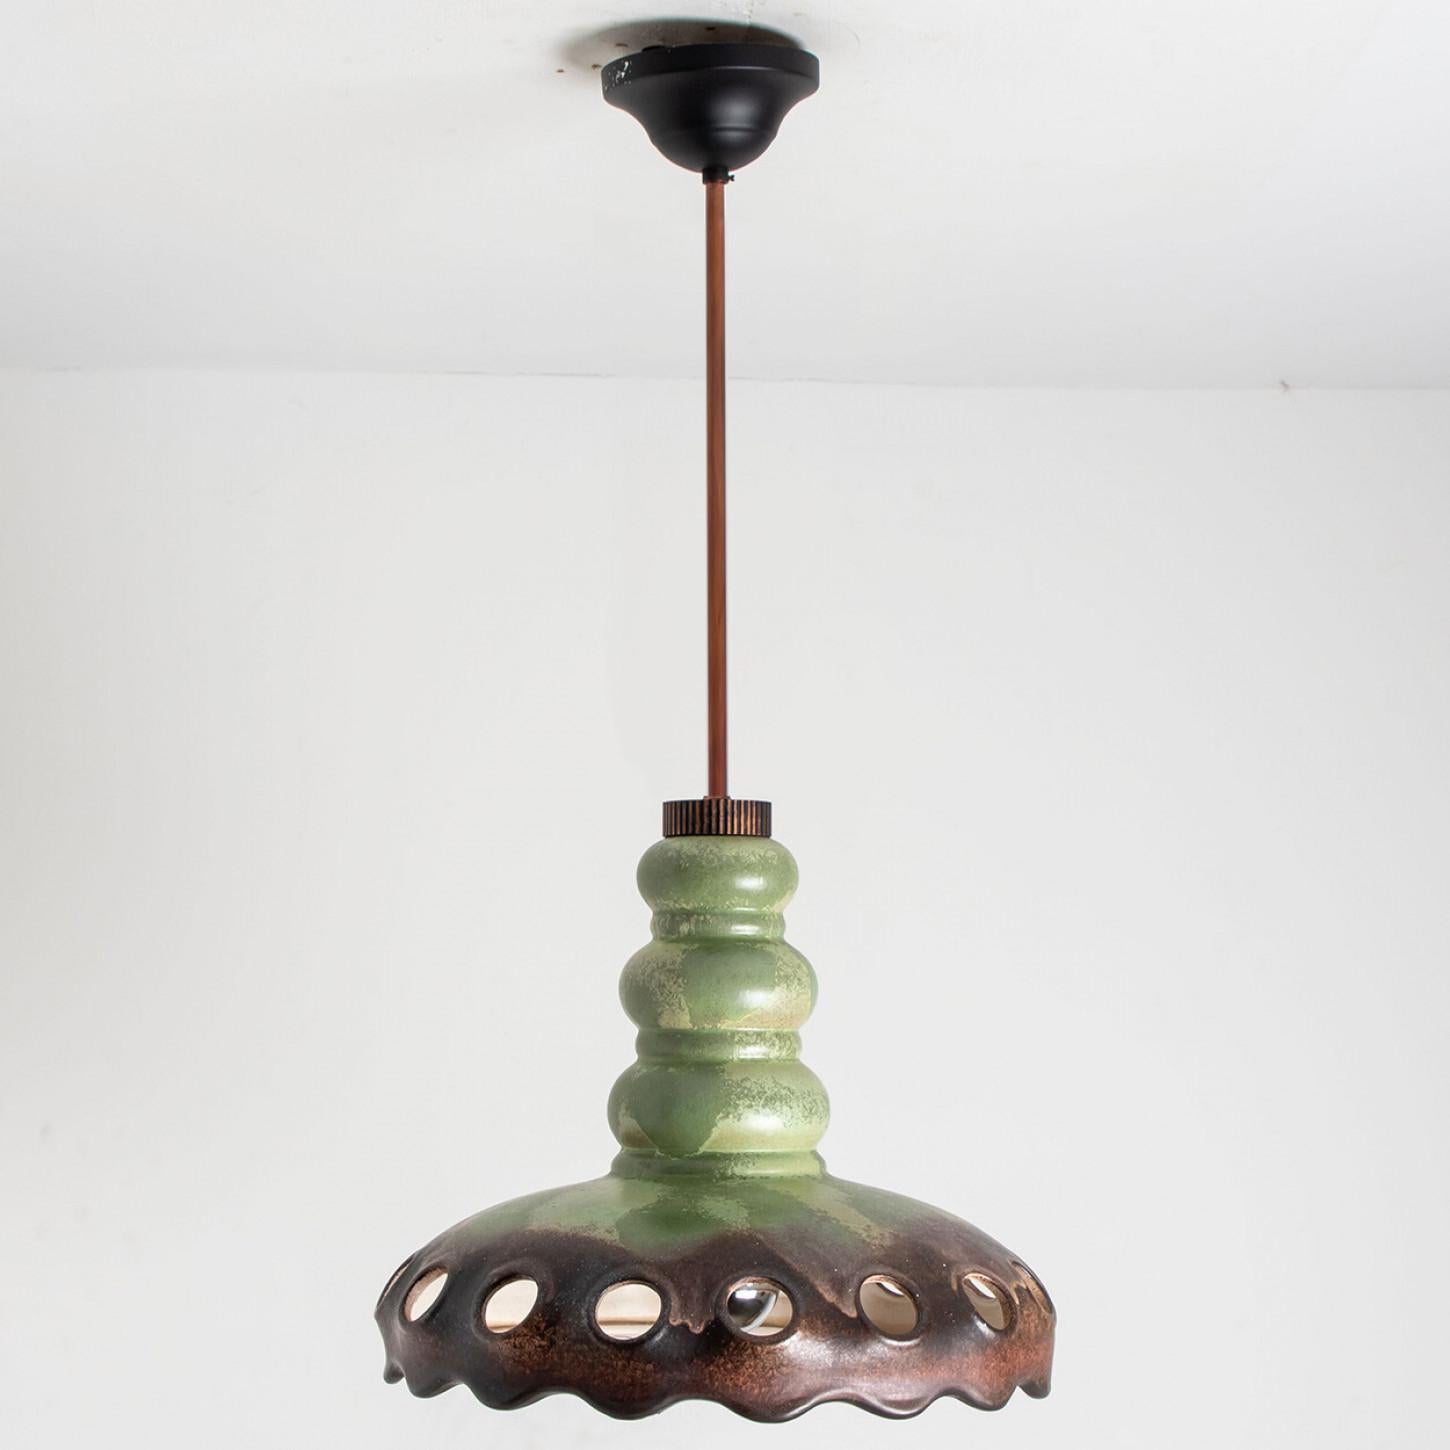 PAN Keramik Green Brown Hanging Ceramic Lamp, Germany, 1970s For Sale 11